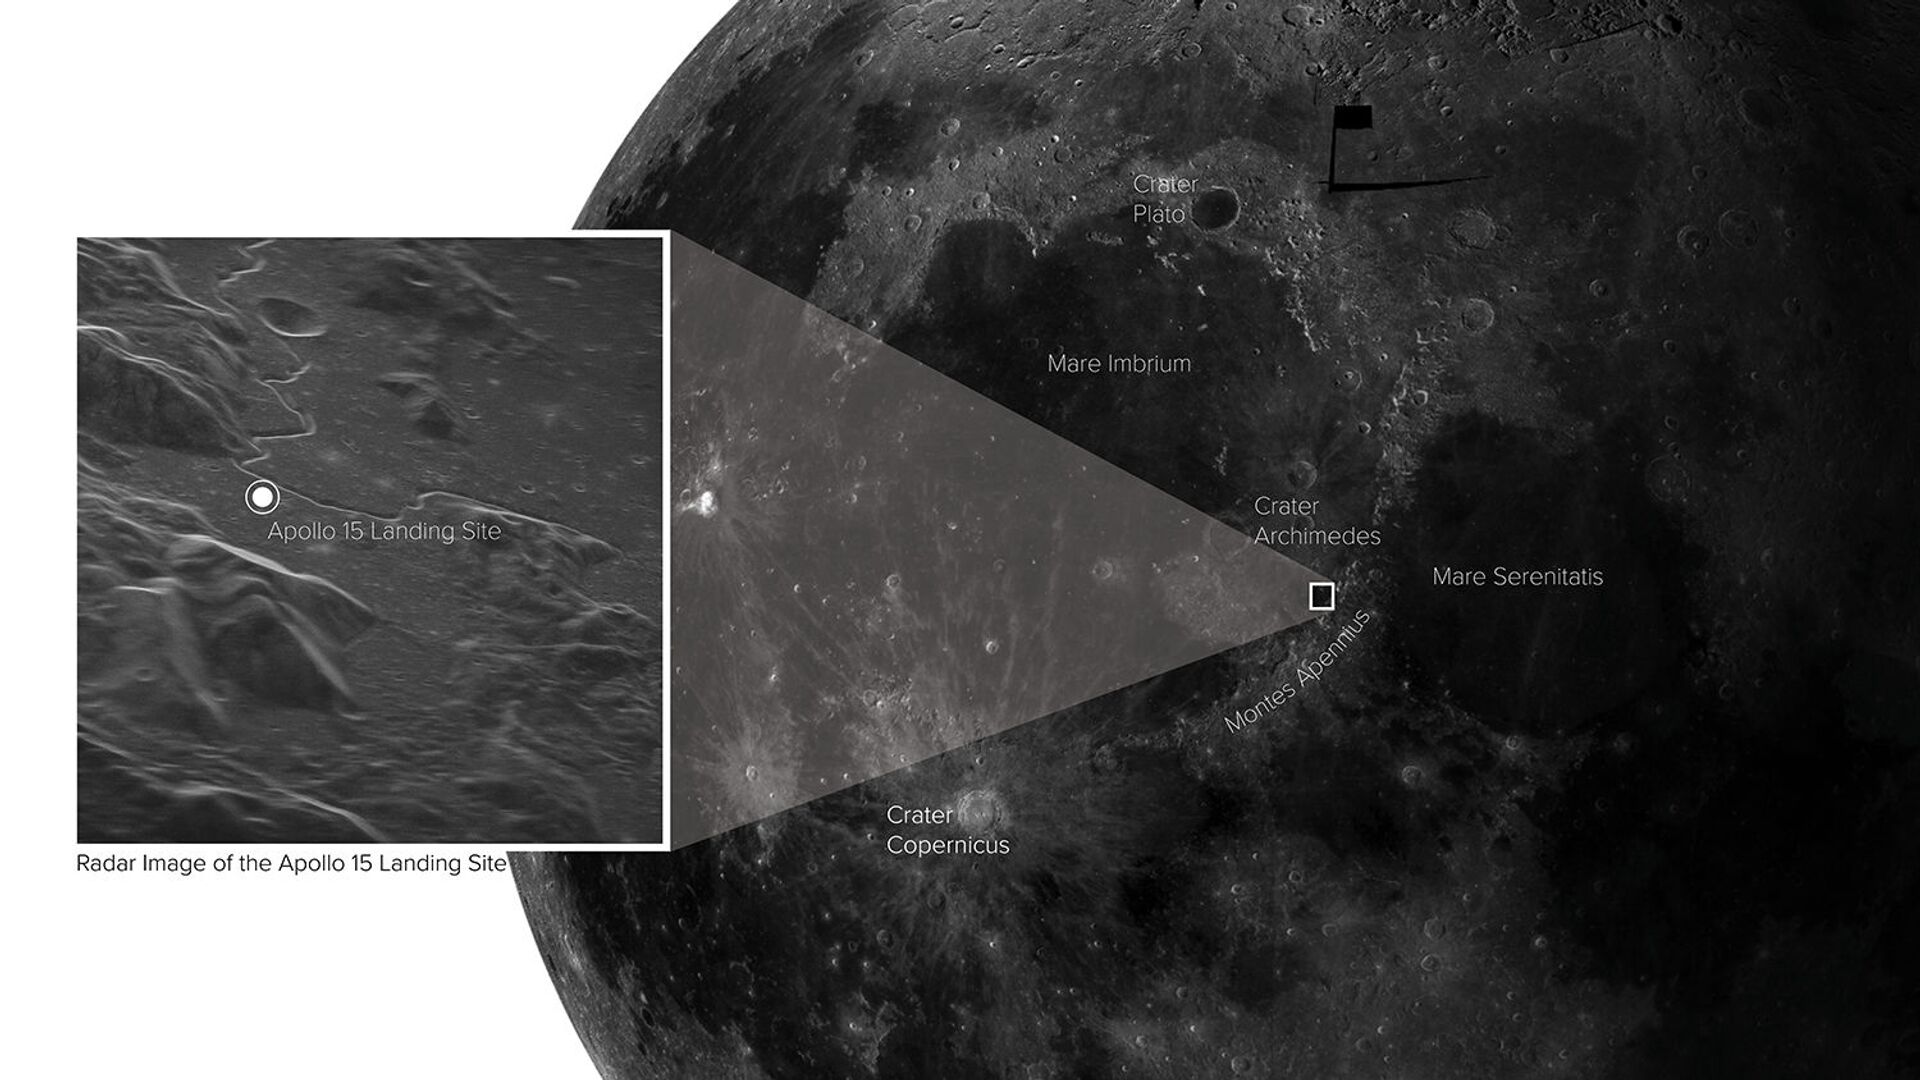 Novo radar planetário capta imagem detalhada da Lua a partir da Terra (FOTO)  - Sputnik Brasil, 1920, 01.02.2021